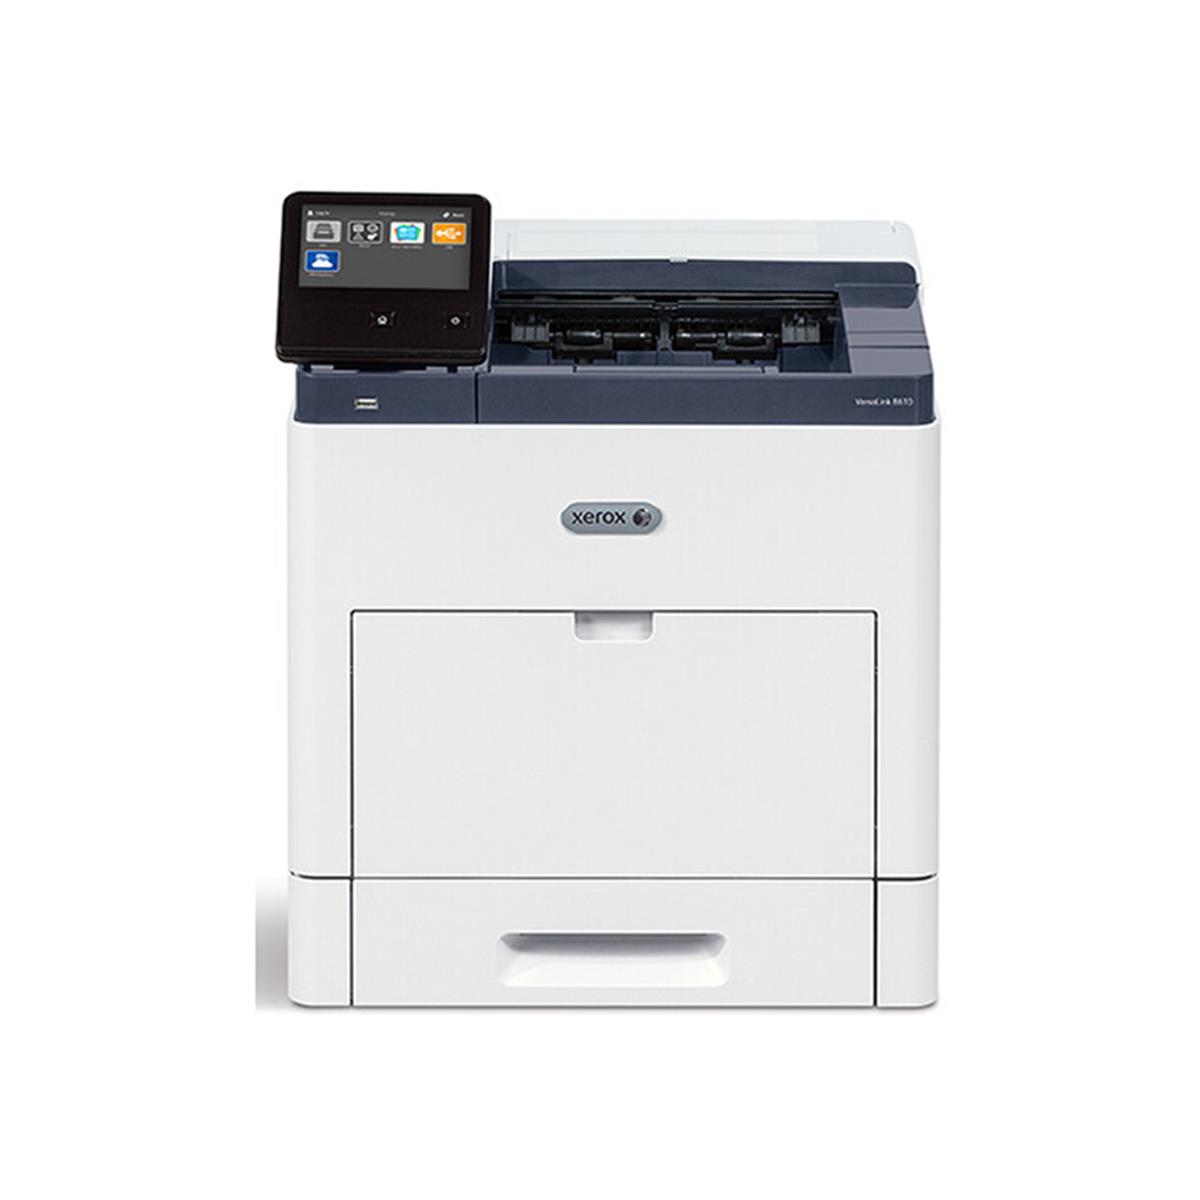 Image of Xerox VersaLink C625 Multifunction Duplex Color Laser Printer